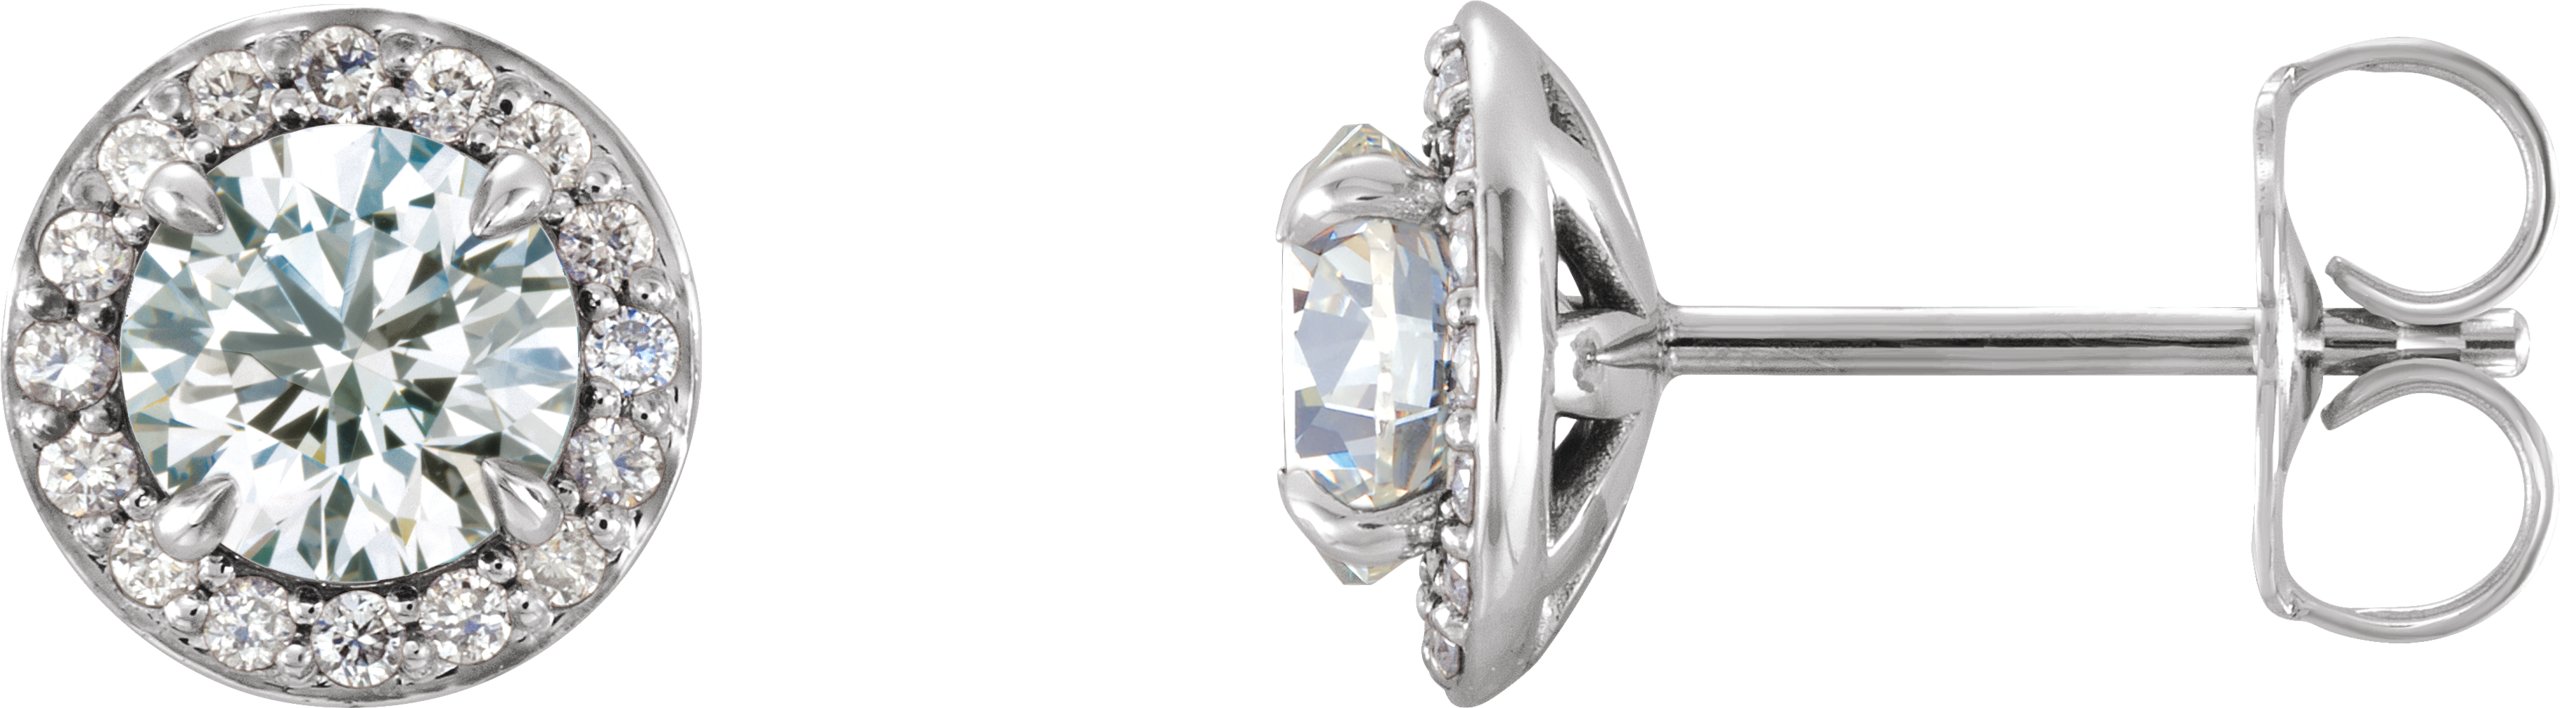 14K White 6 mm Round Forever One Moissanite and .20 CTW Diamond Earrings Ref. 13791127